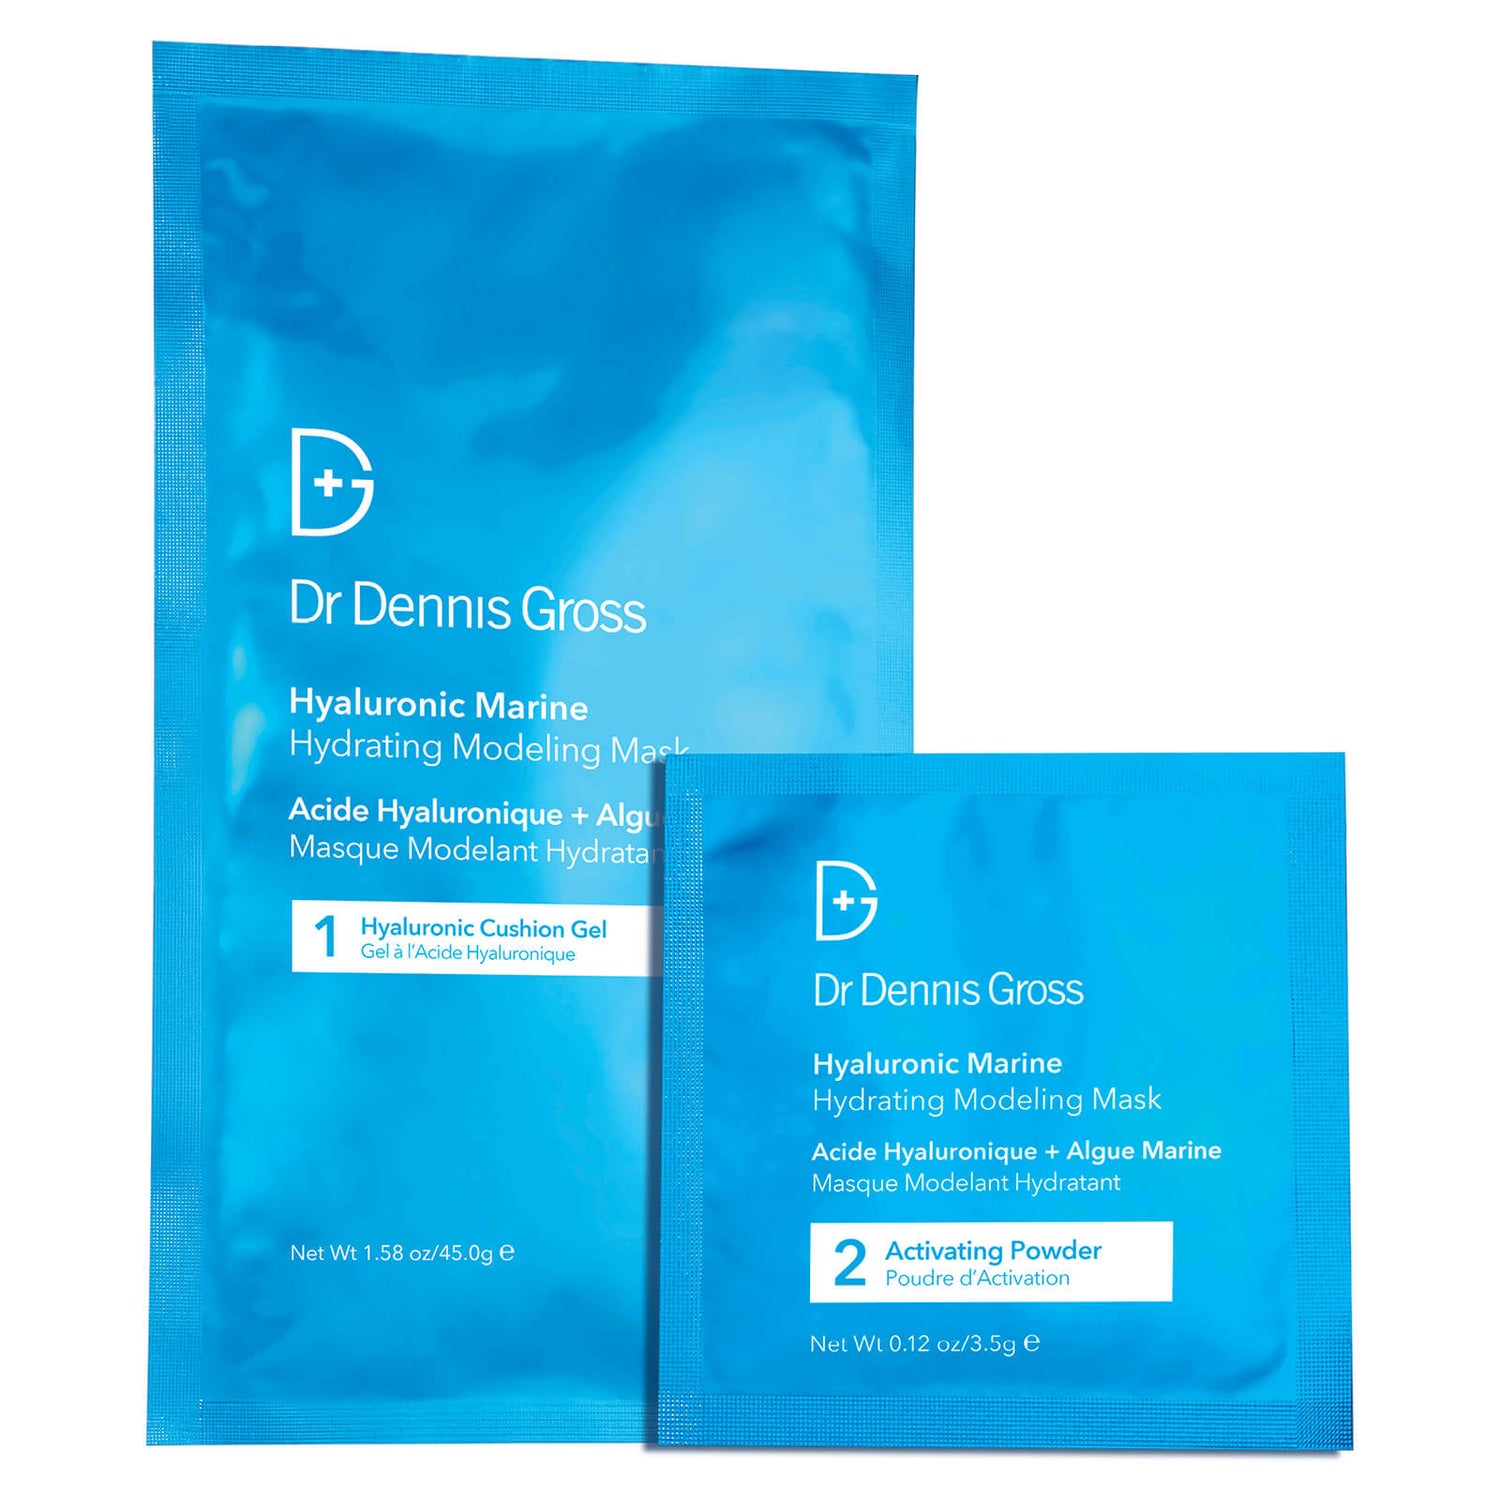 Dr Dennis Gross Skincare Hyaluronic Marine Hydrating Modeling Mask (Pack of 4)